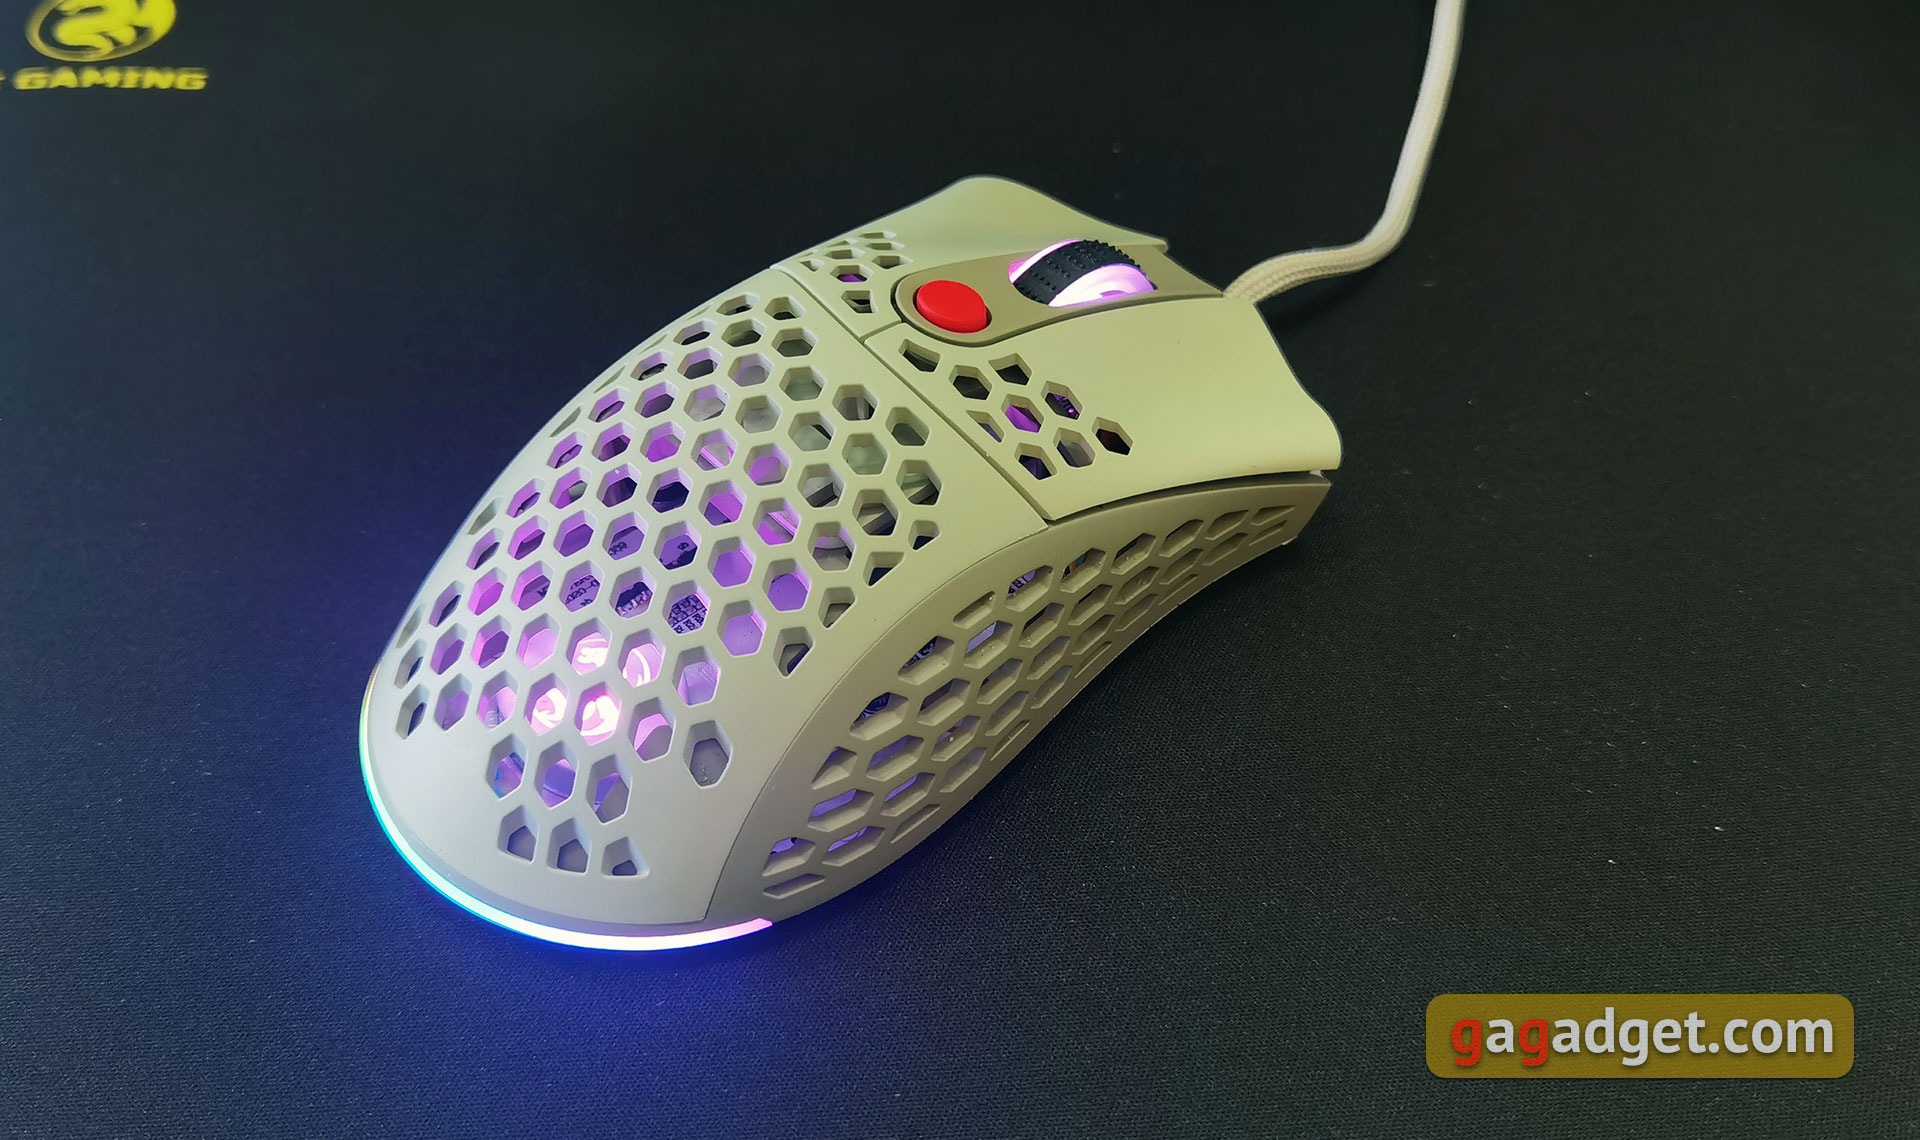 2E Gaming HyperSpeed Pro Überblick: Eine leichte Gaming-Maus mit einem großartigen Sensor-12